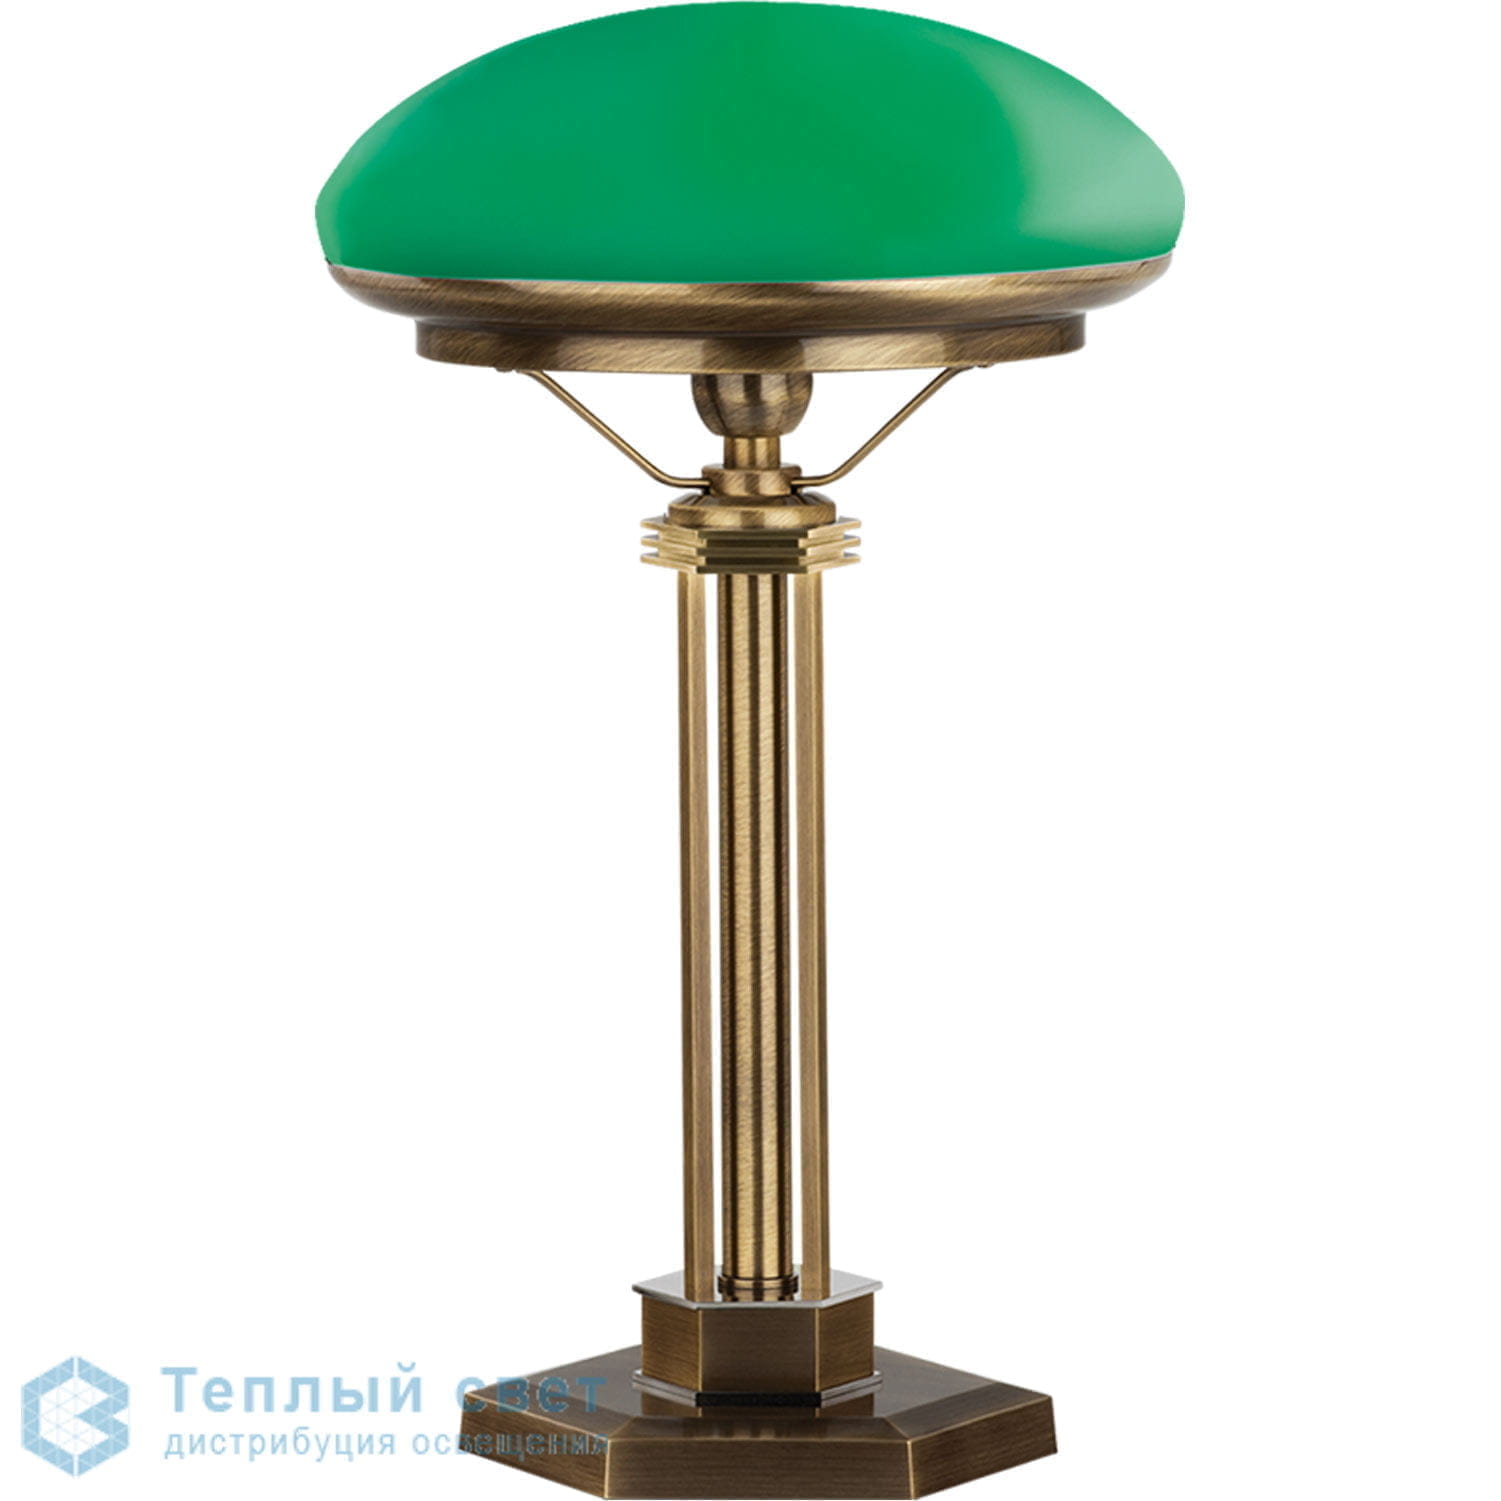 Настольные лампы с зеленым абажуром купить. Настольная лампа Kutek. Настольная лампа bm614 с зеленым абажуром. Kutek светильники Decor кабинетная лампа. Kutek Sor-LG-1(P).